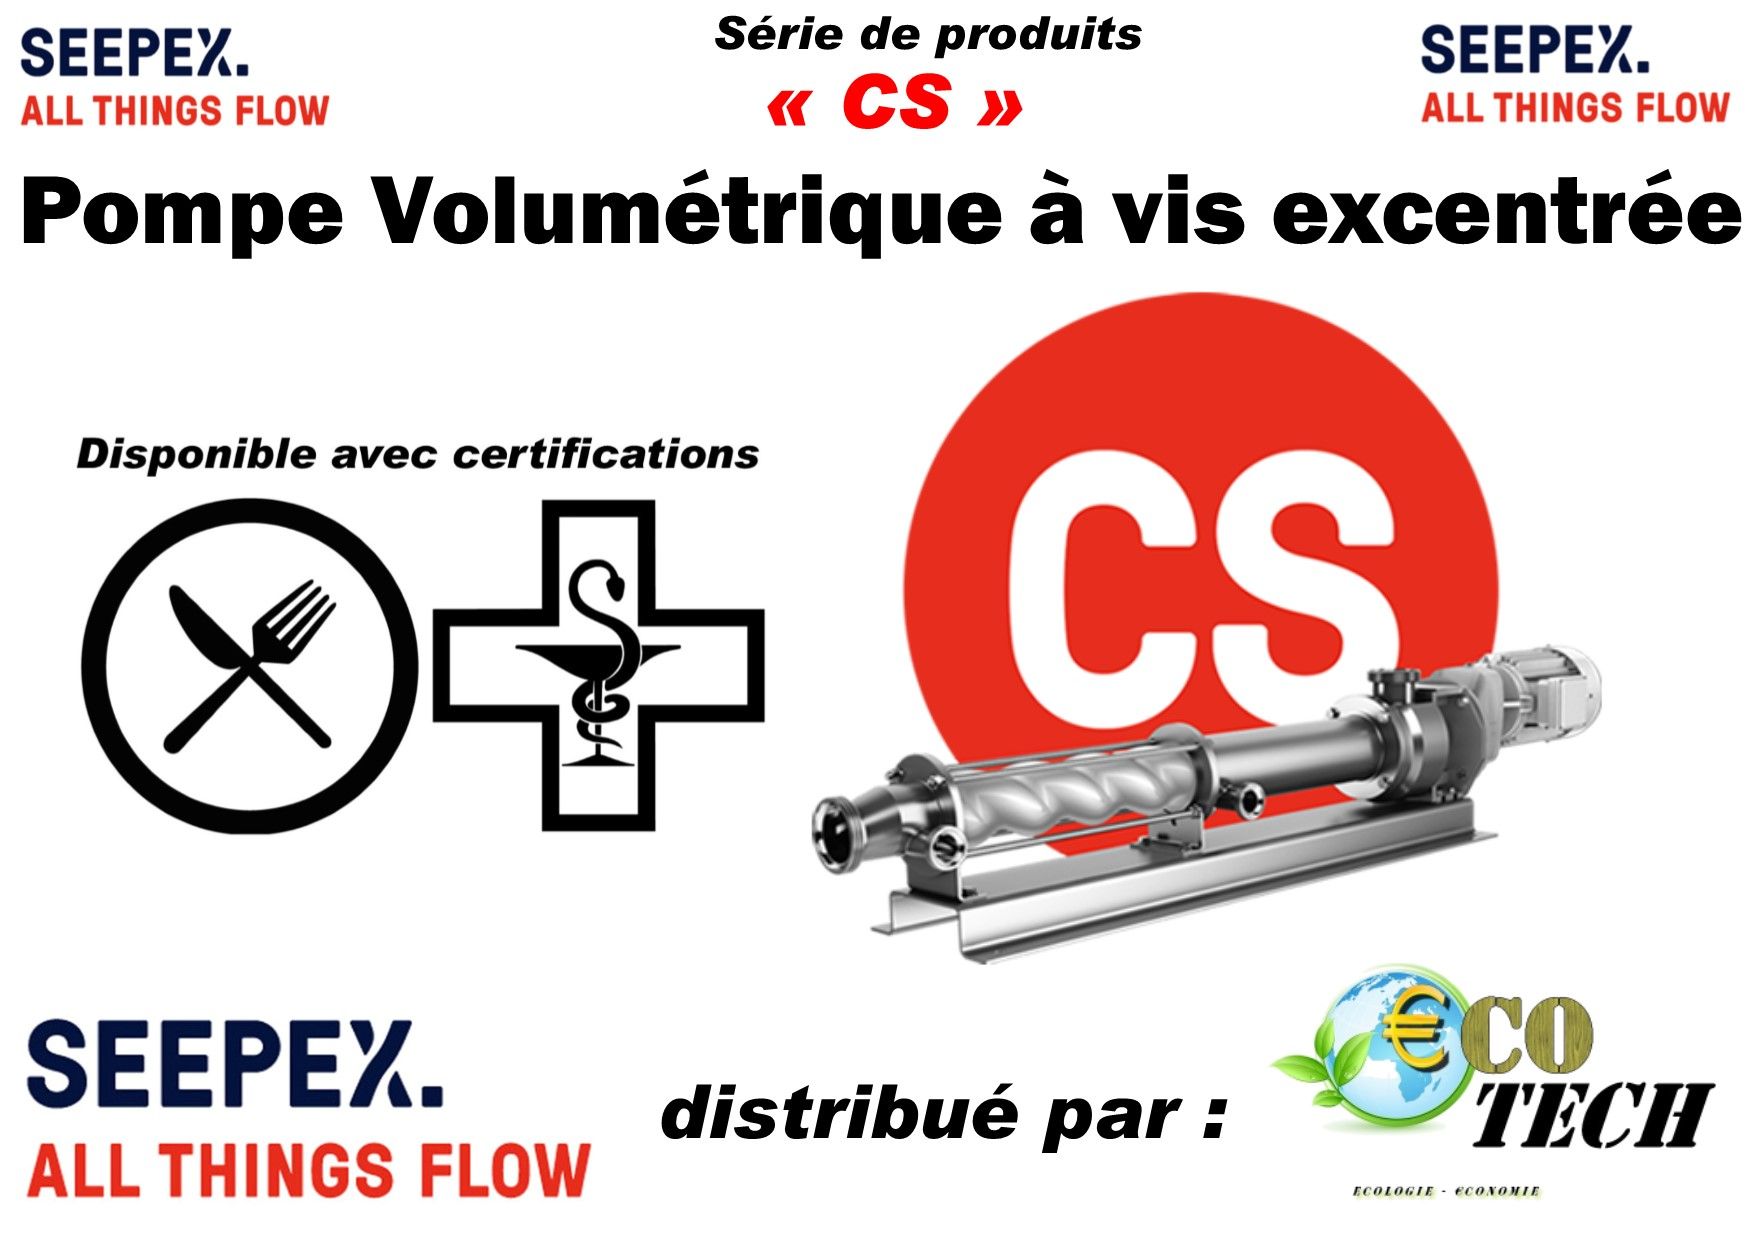 Seepex série cs - pompe volumetrique a vis excentree alimentaire pharmaceutique_0